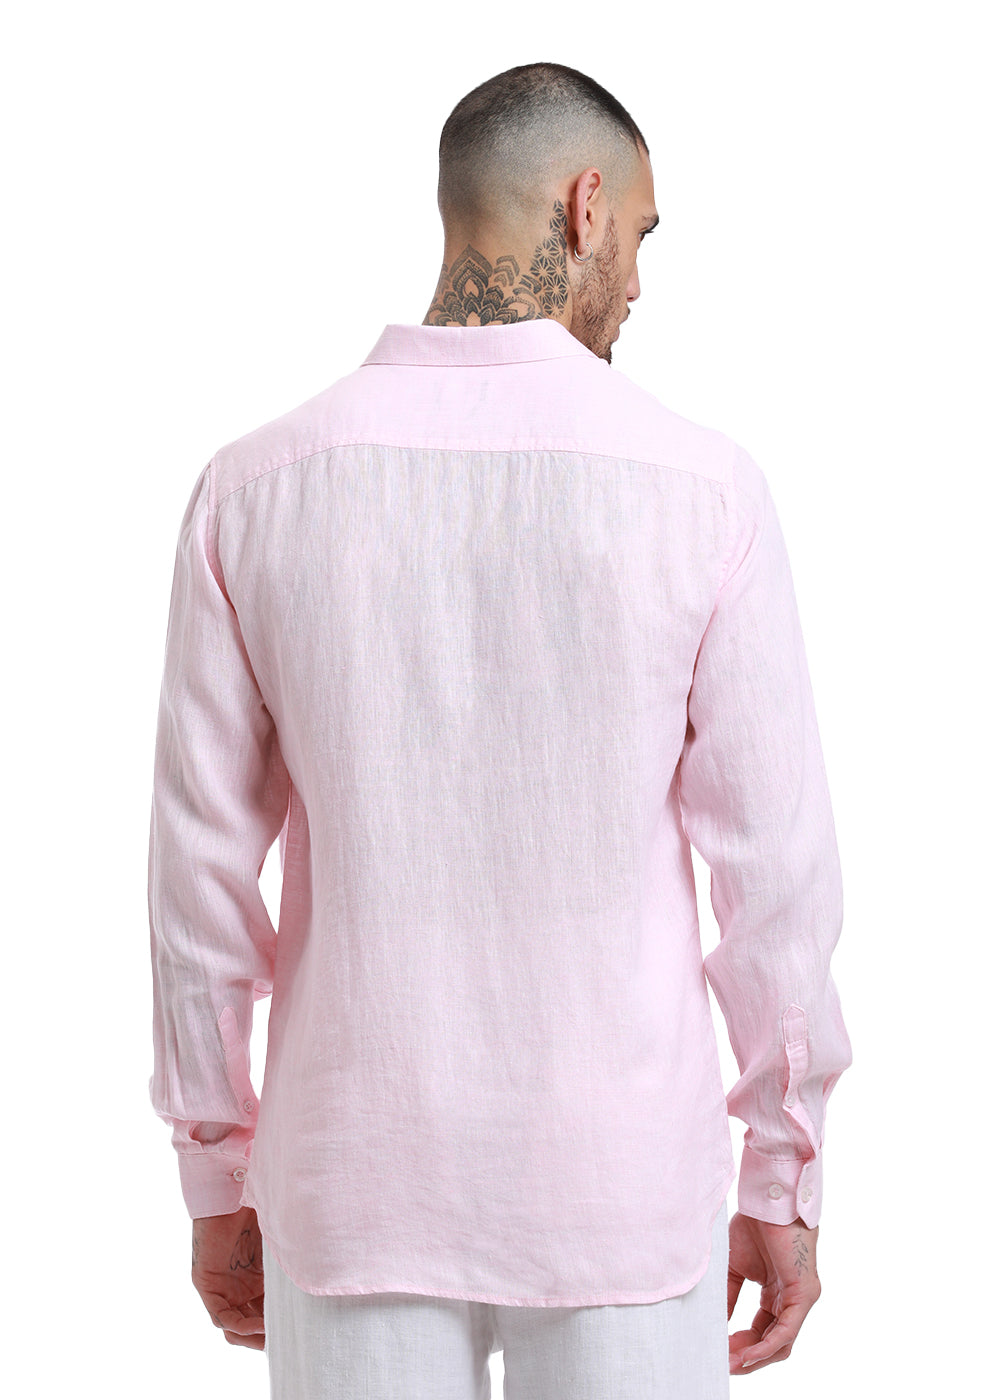 Pastel Pink Linen Shirt Rear View